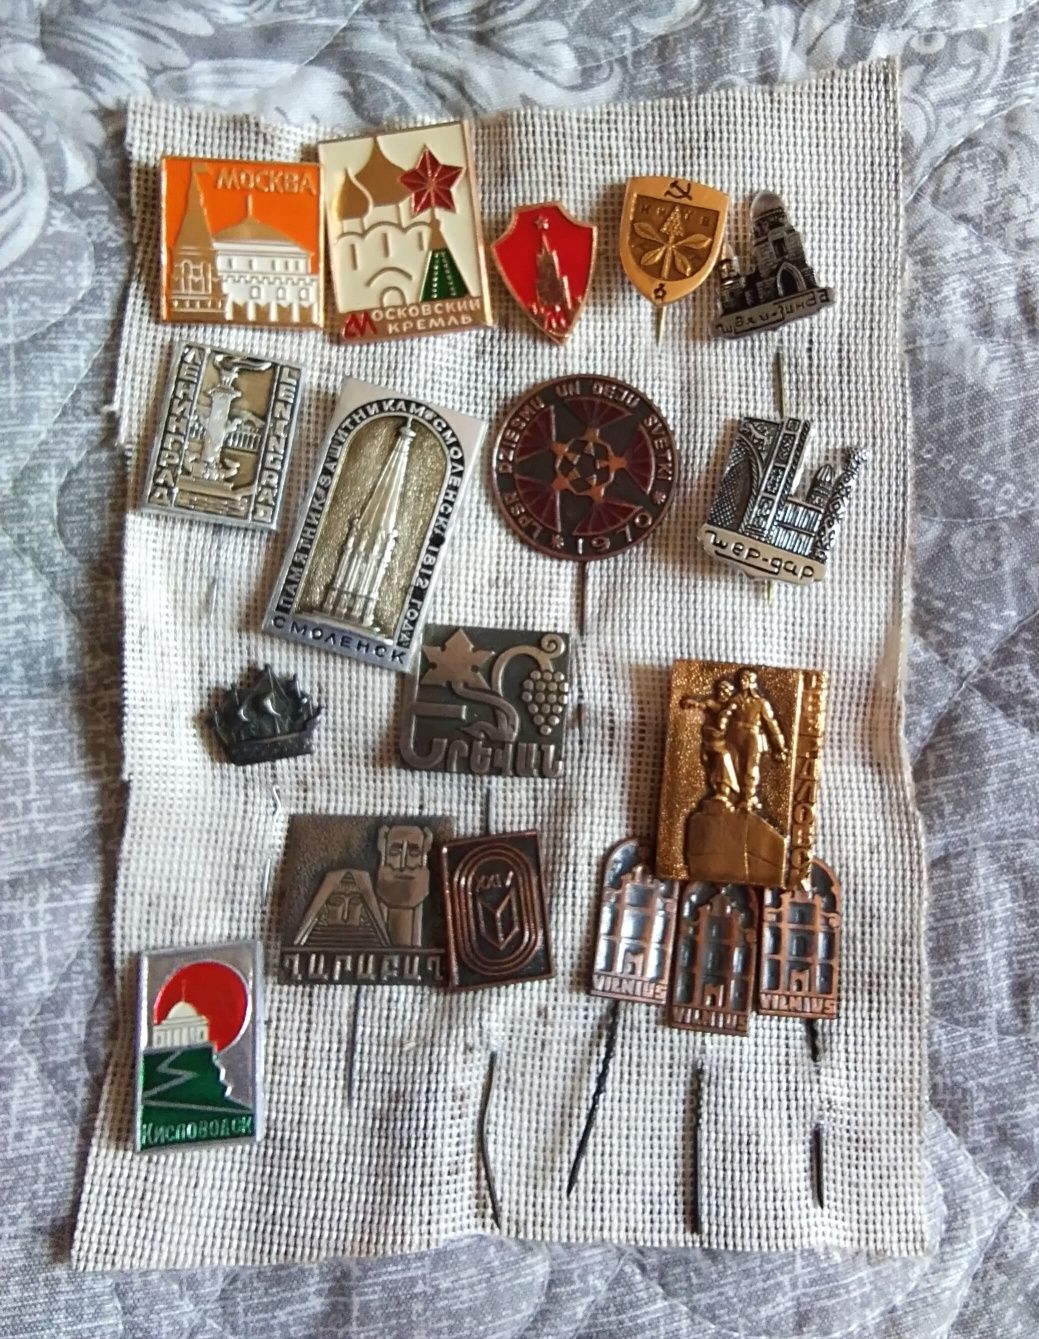 Ёлочные игрушки, медали, значки советского периода из личной коллекции